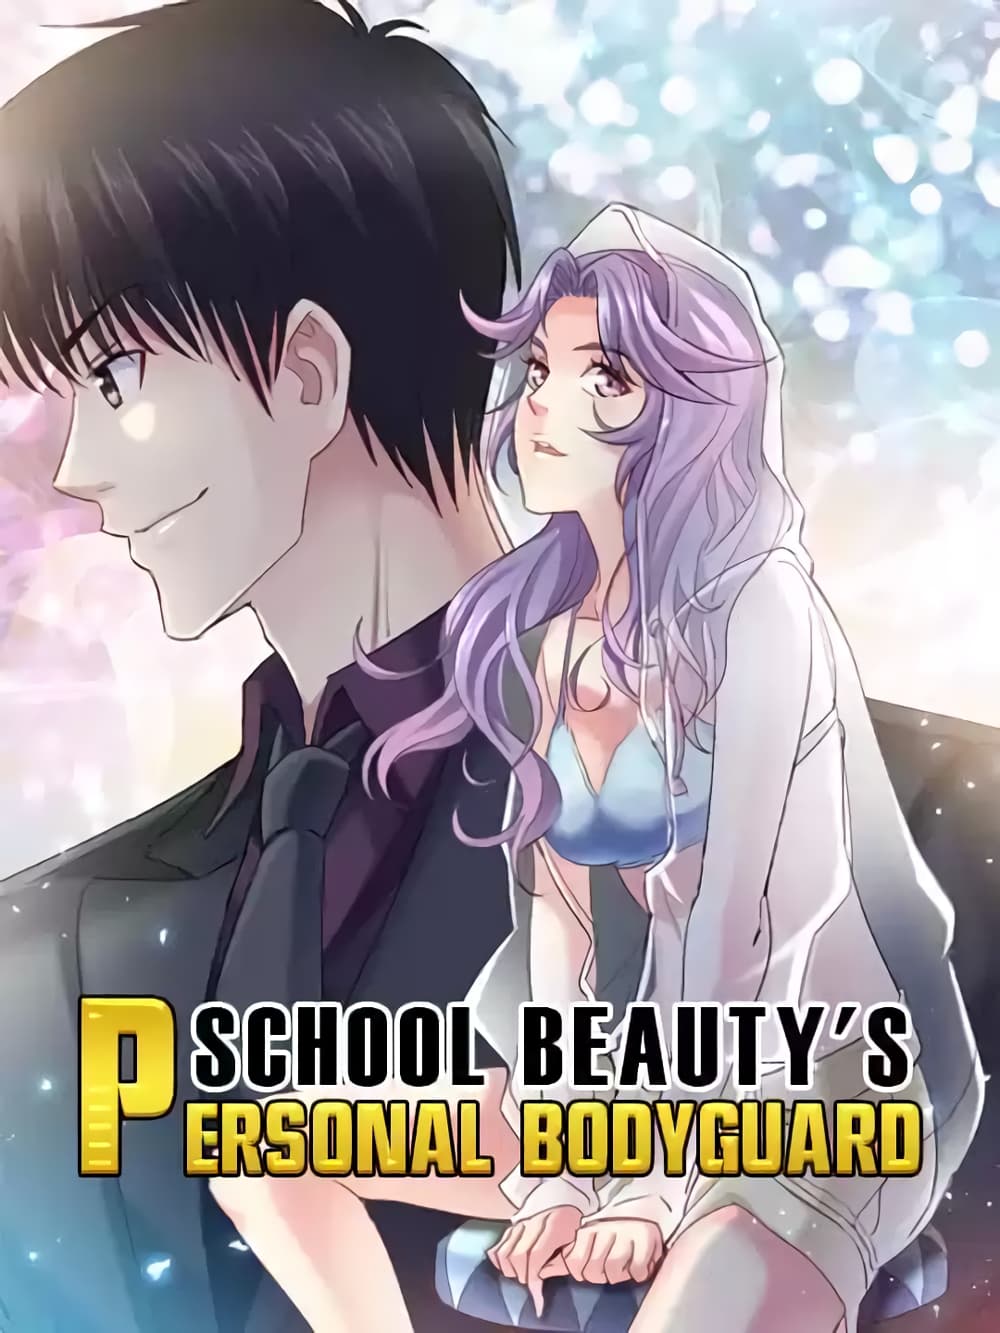 School Beauty's Bodyguard 296 (1)